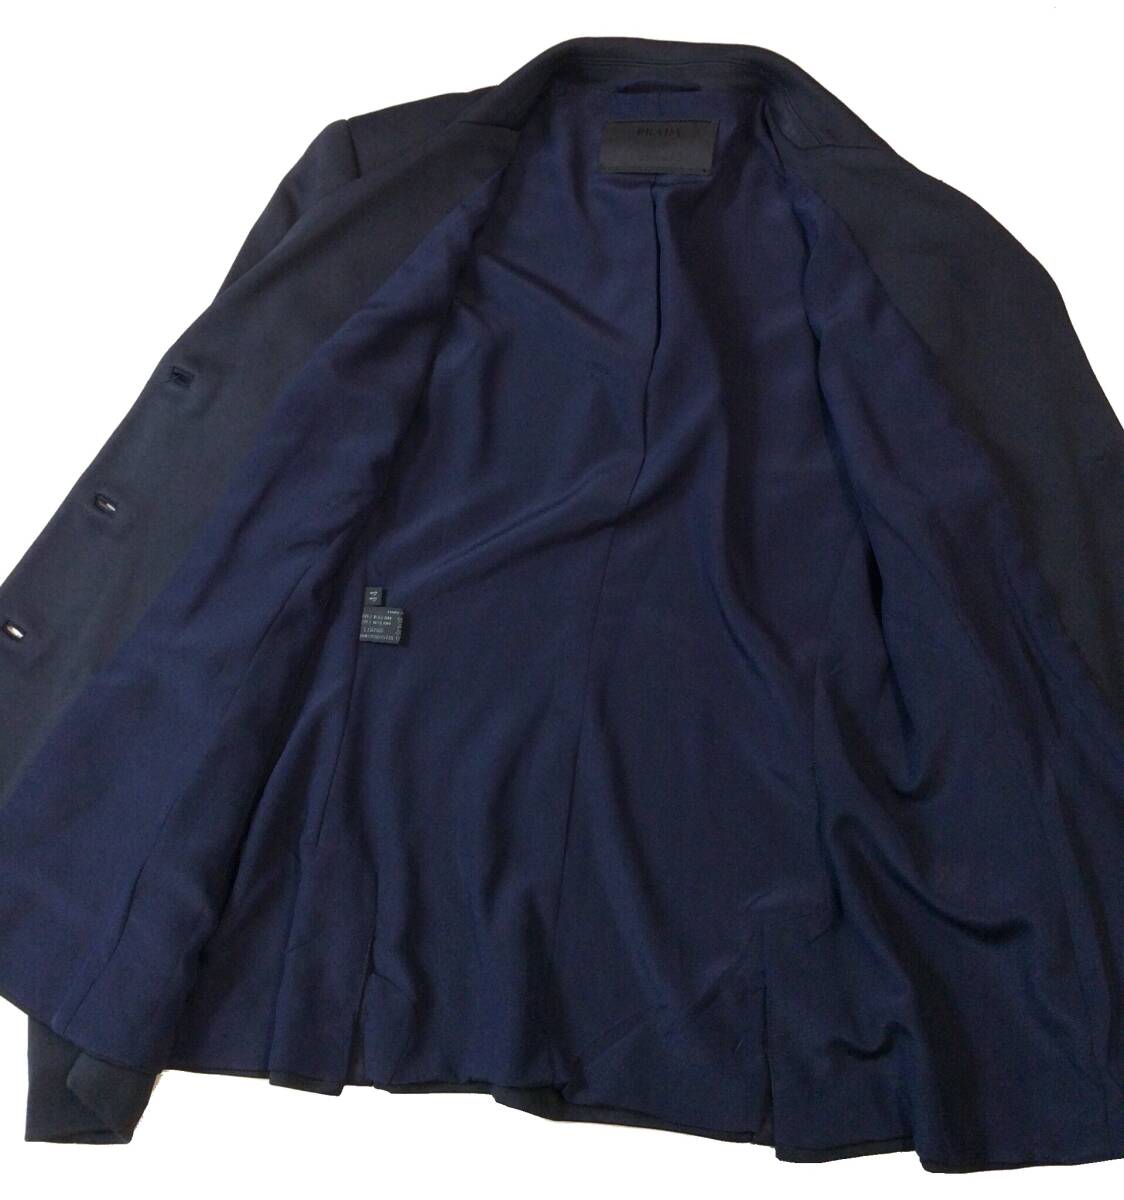 PRADA Prada ITALY производства tailored jacket искусственный шелк / нейлон темный темно-синий серия женский 44 (ma)